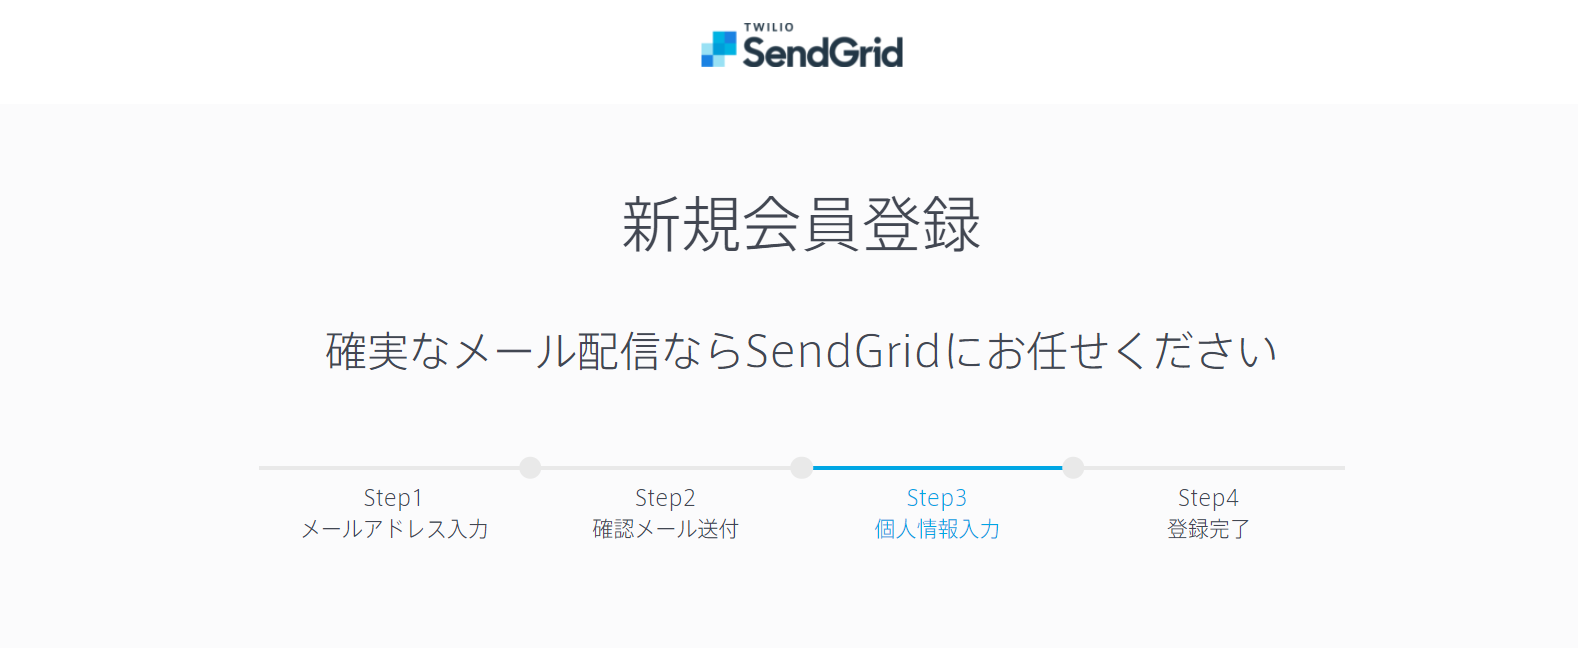 SendGrid4